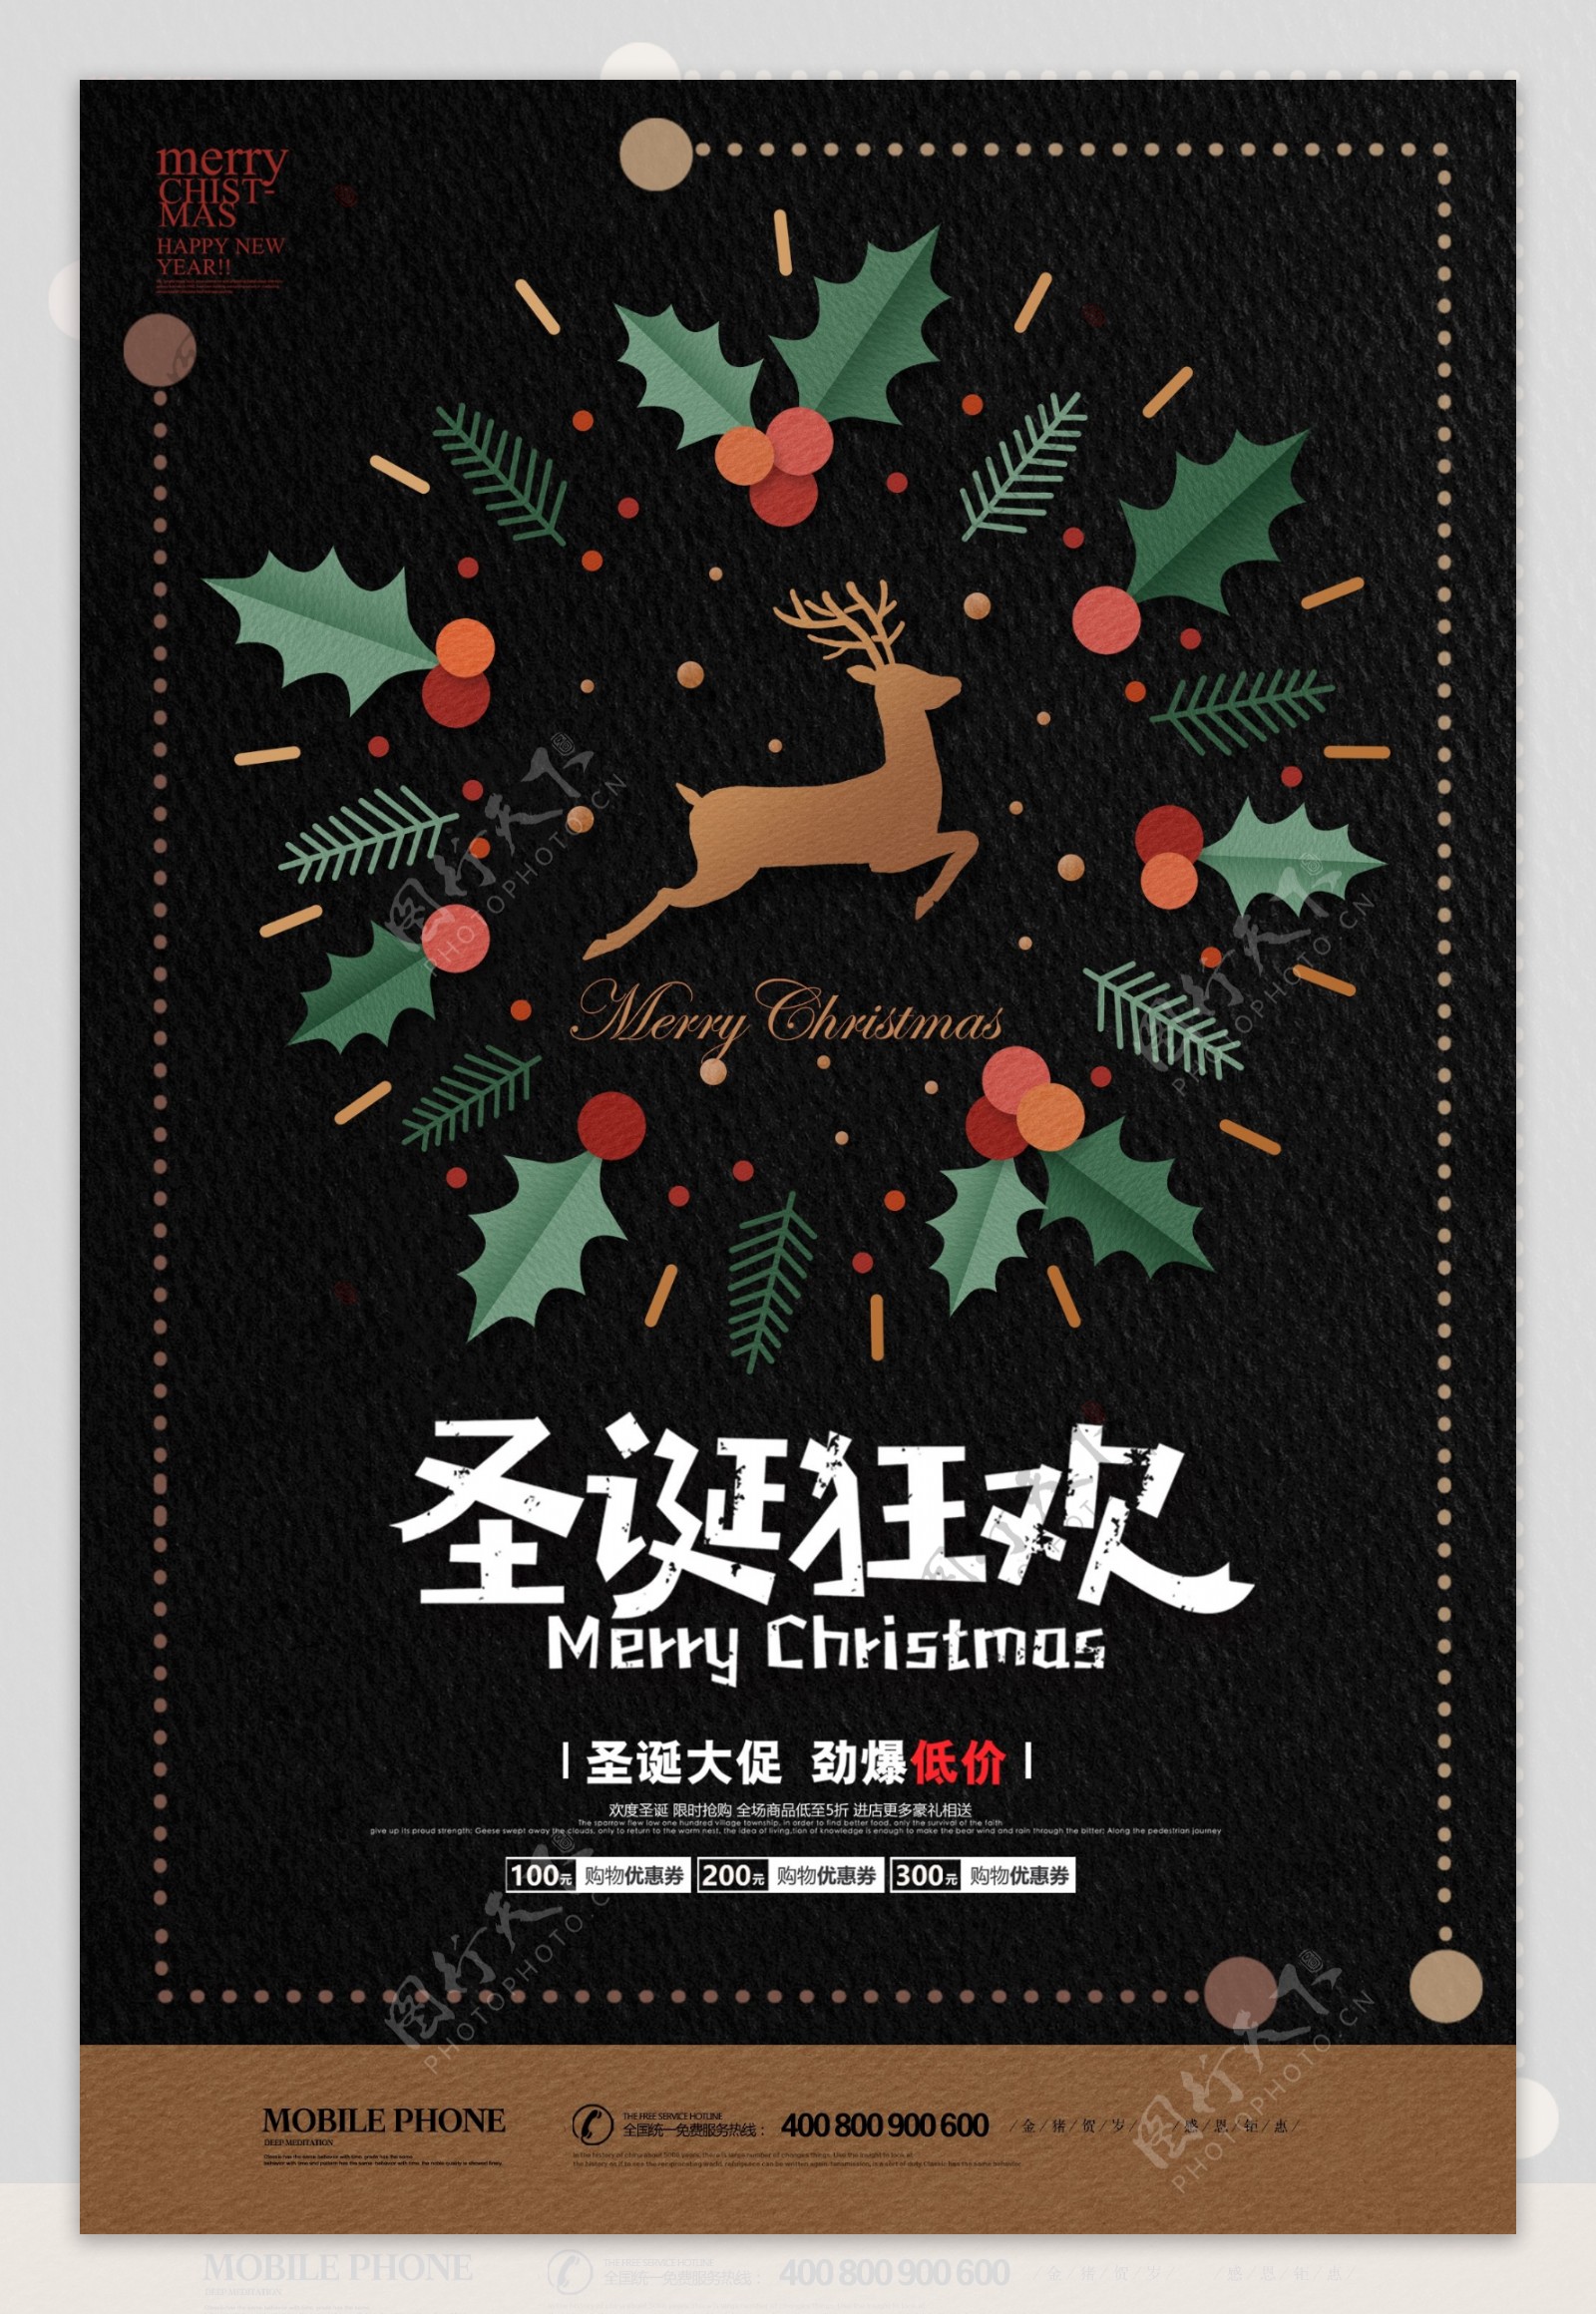 大气商场圣诞快乐圣诞节促销海报